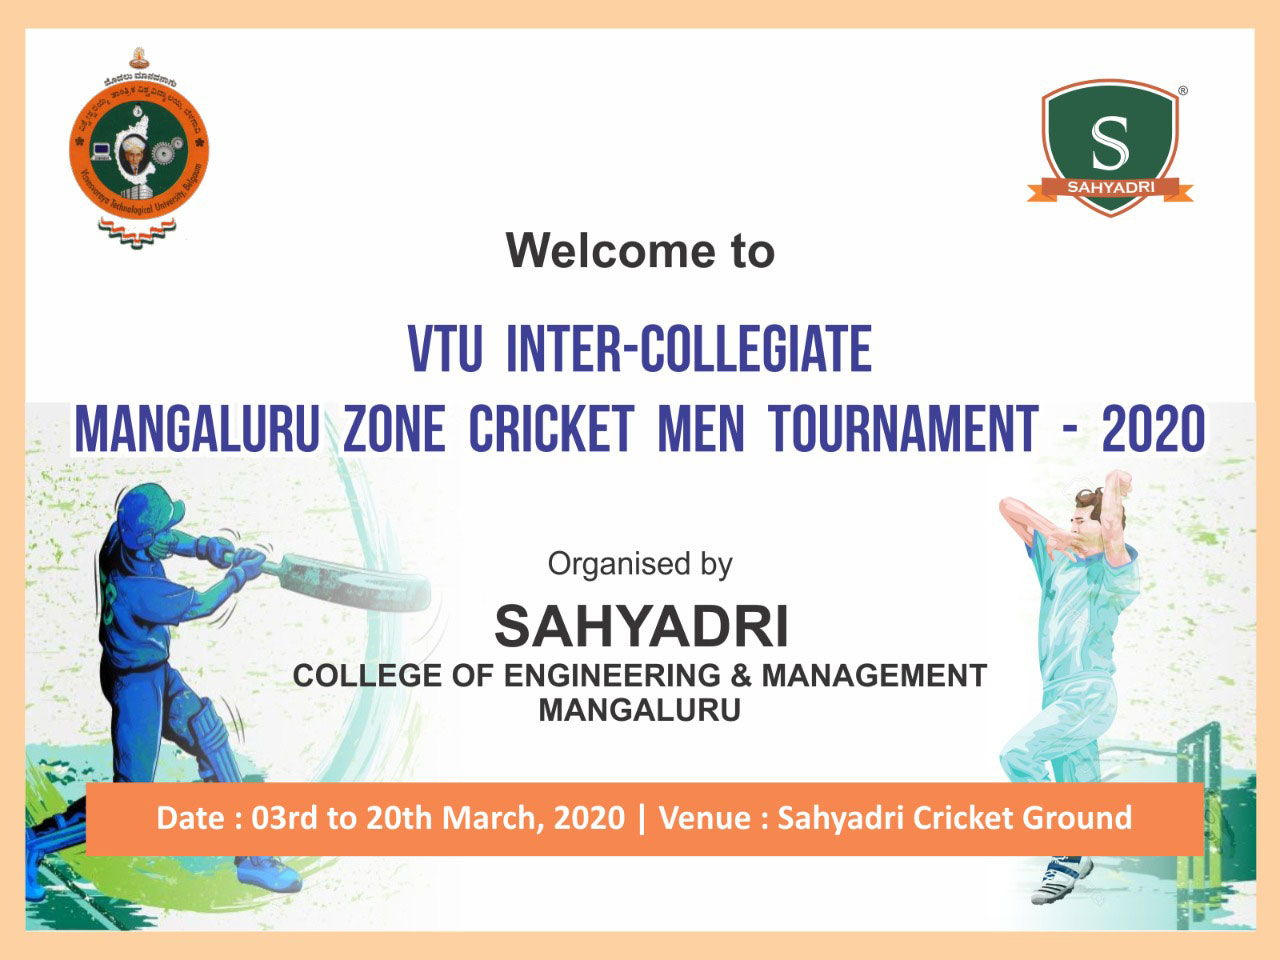 VTU Inter-collegiate Mangaluru Zone Cricket Mens’ Tournament